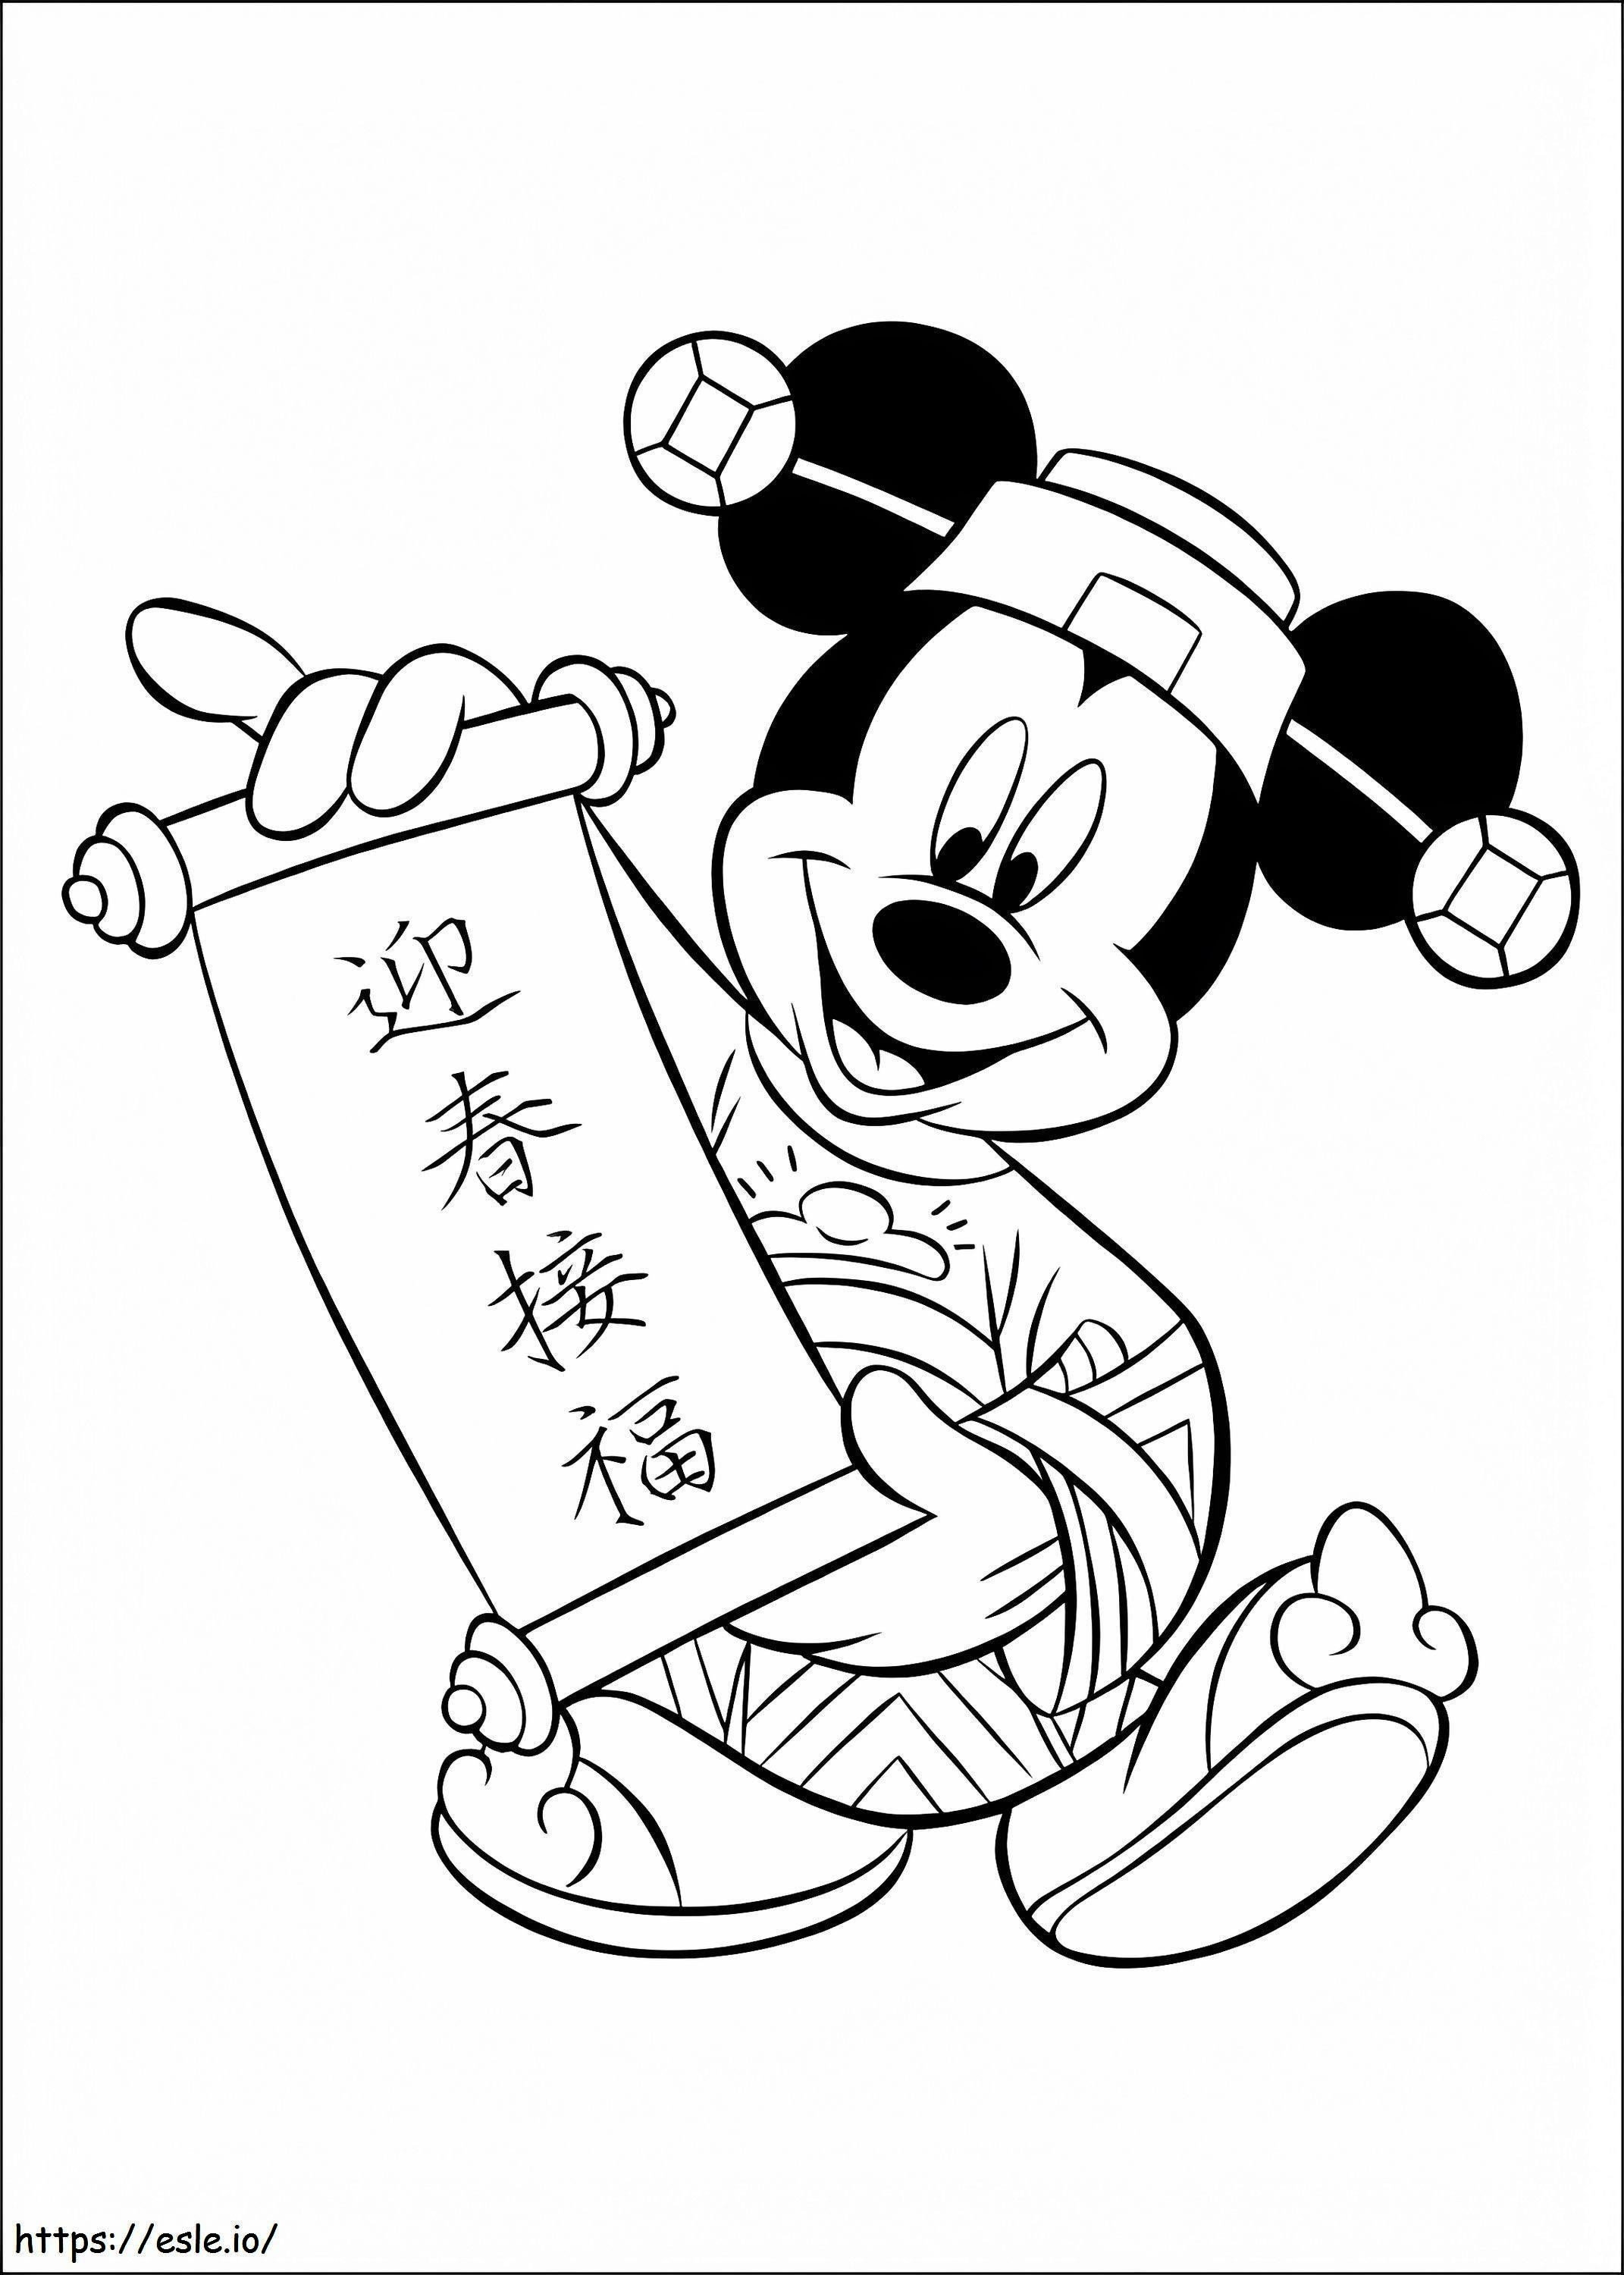 Mickey Chinese ausmalbilder